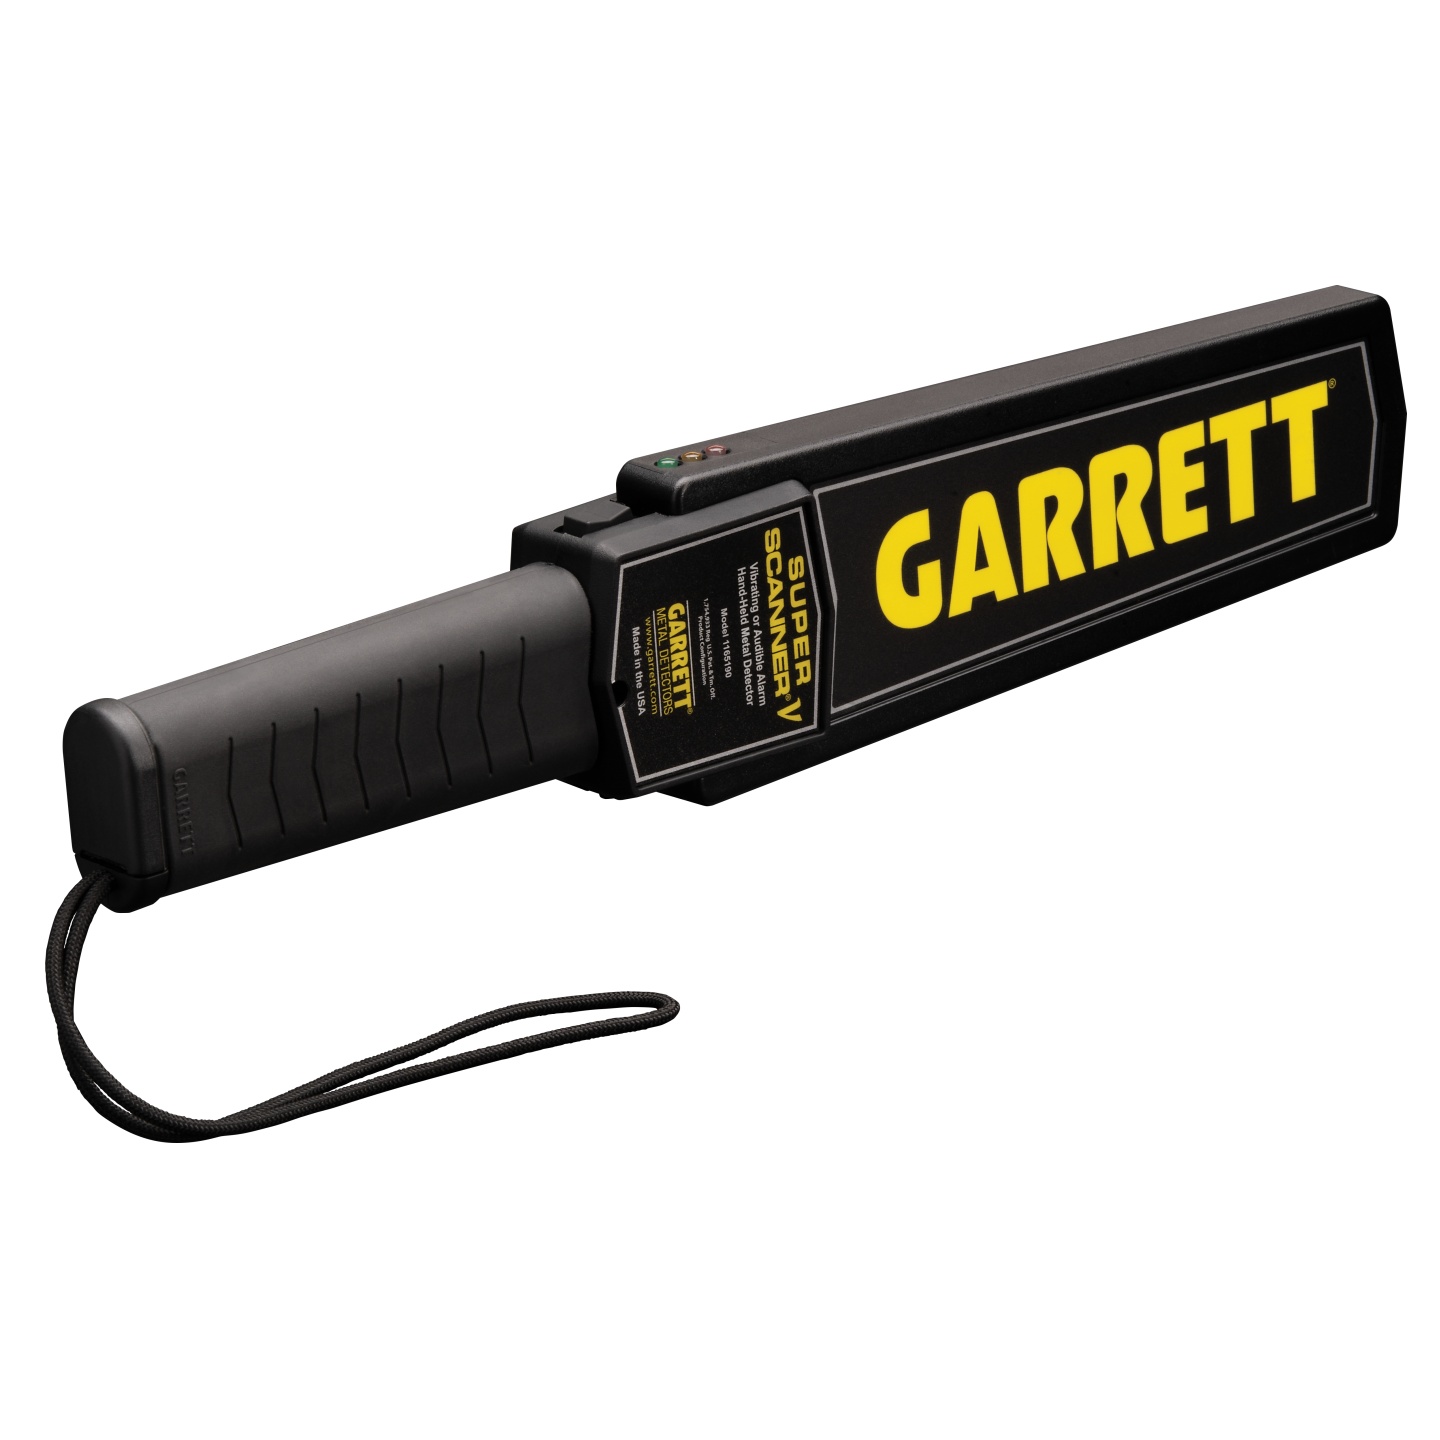 Detektor kovov Garrett SUPER SCANNER V